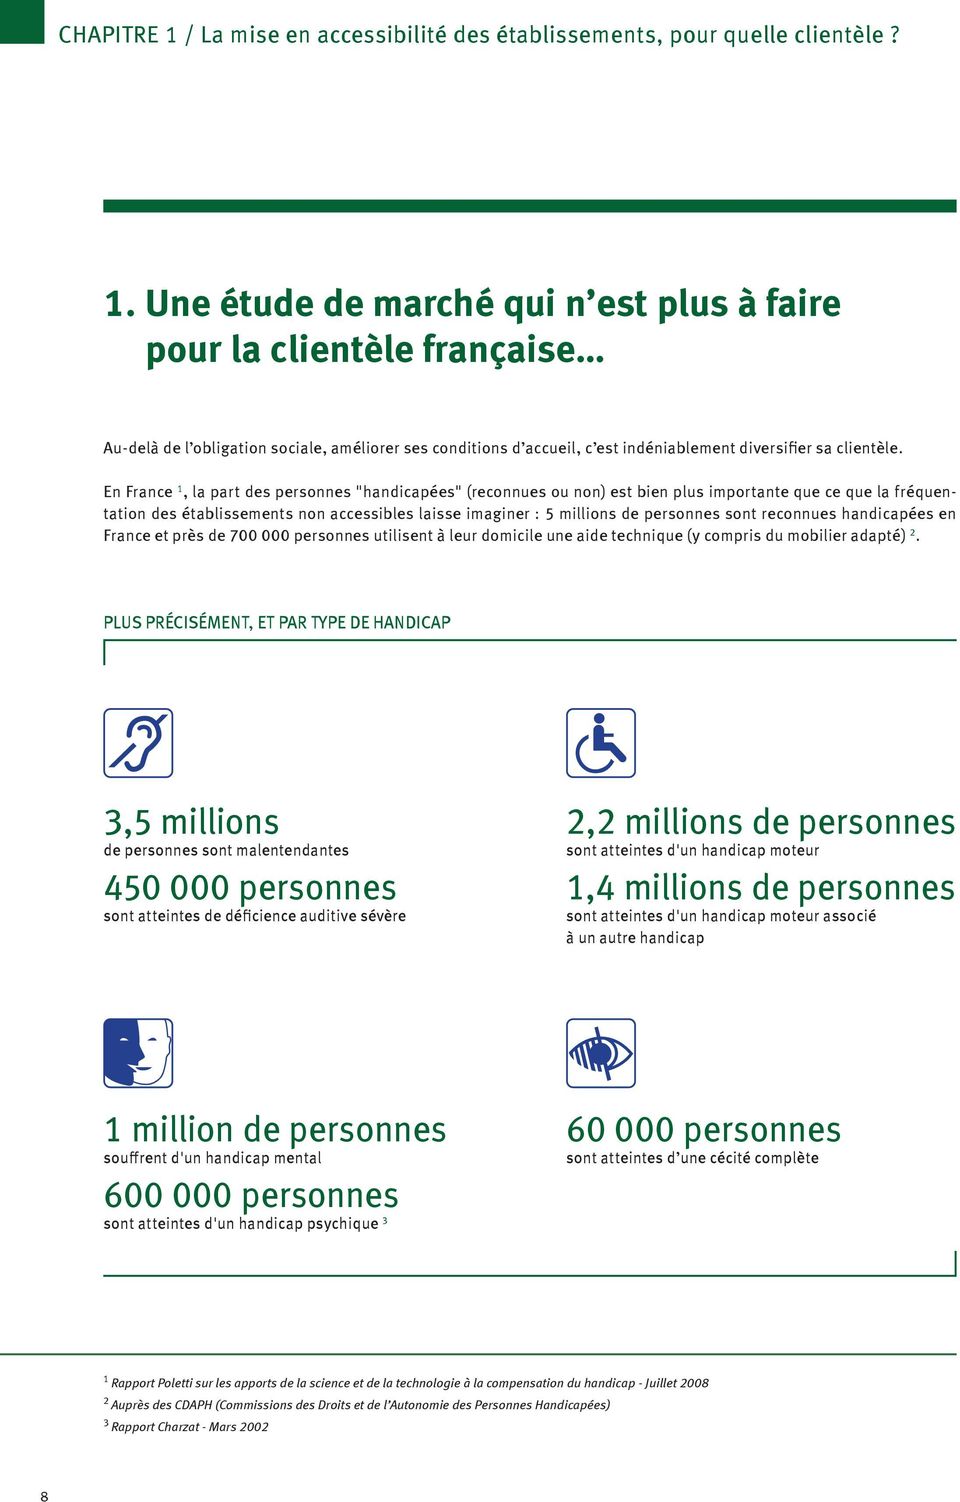 sont reconnues handicapées en France et près de 700 000 personnes utilisent à leur domicile une aide technique (y compris du mobilier adapté) 2.